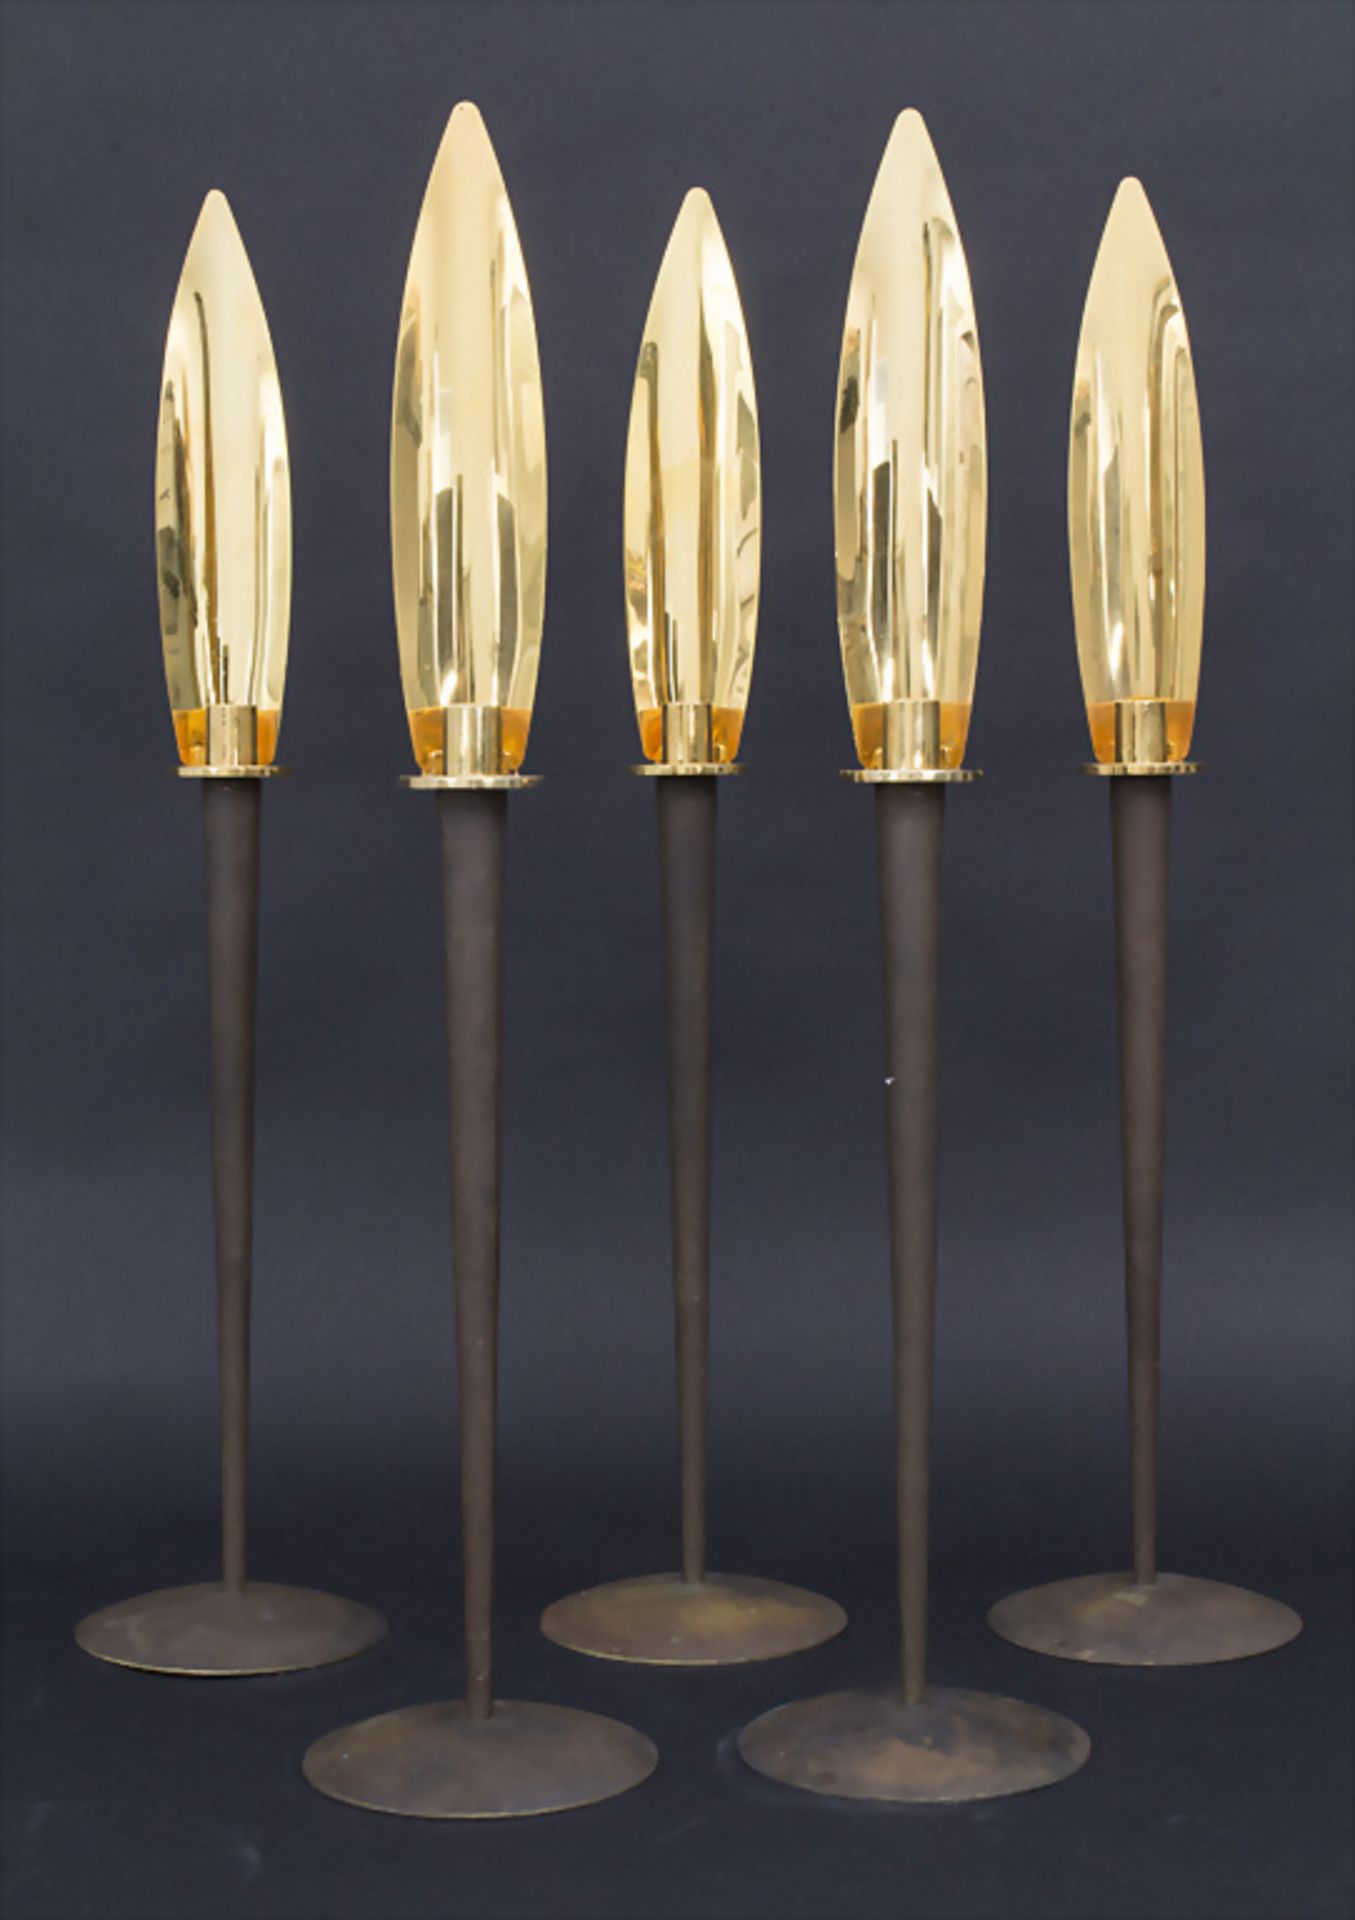 Satz 5 Designer-Leuchter / A set of 5 bronze candlesticks